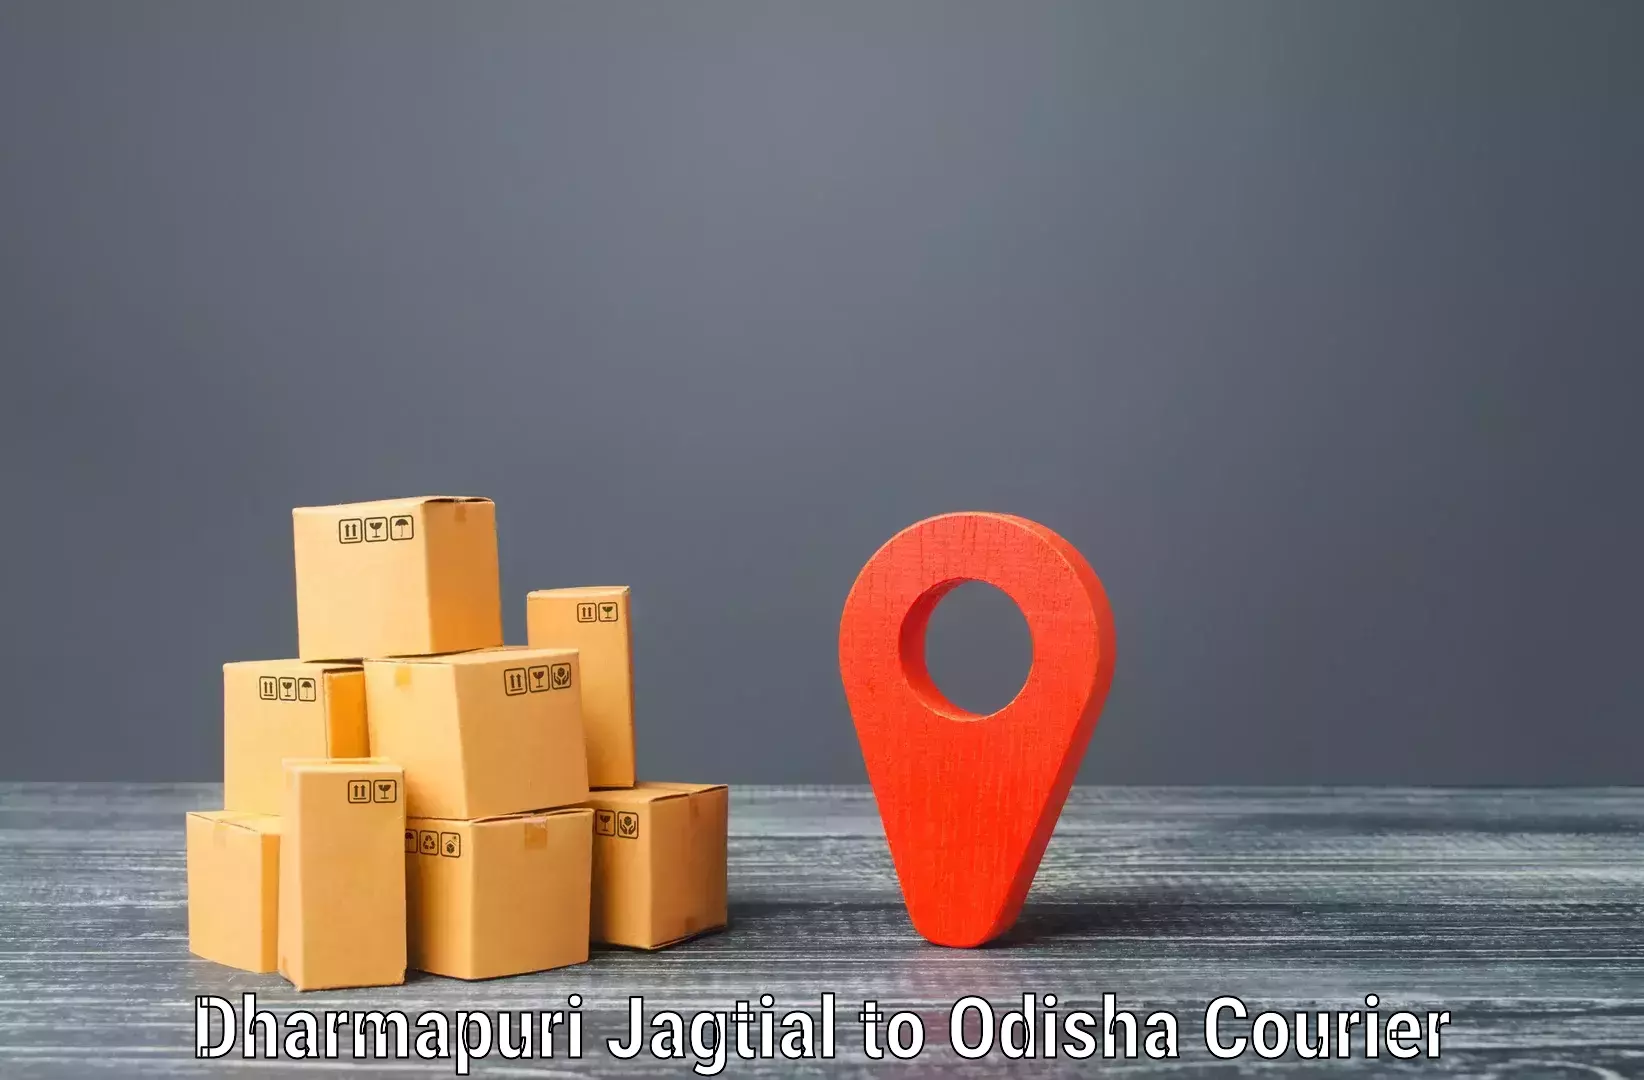 Affordable shipping rates Dharmapuri Jagtial to Balikuda